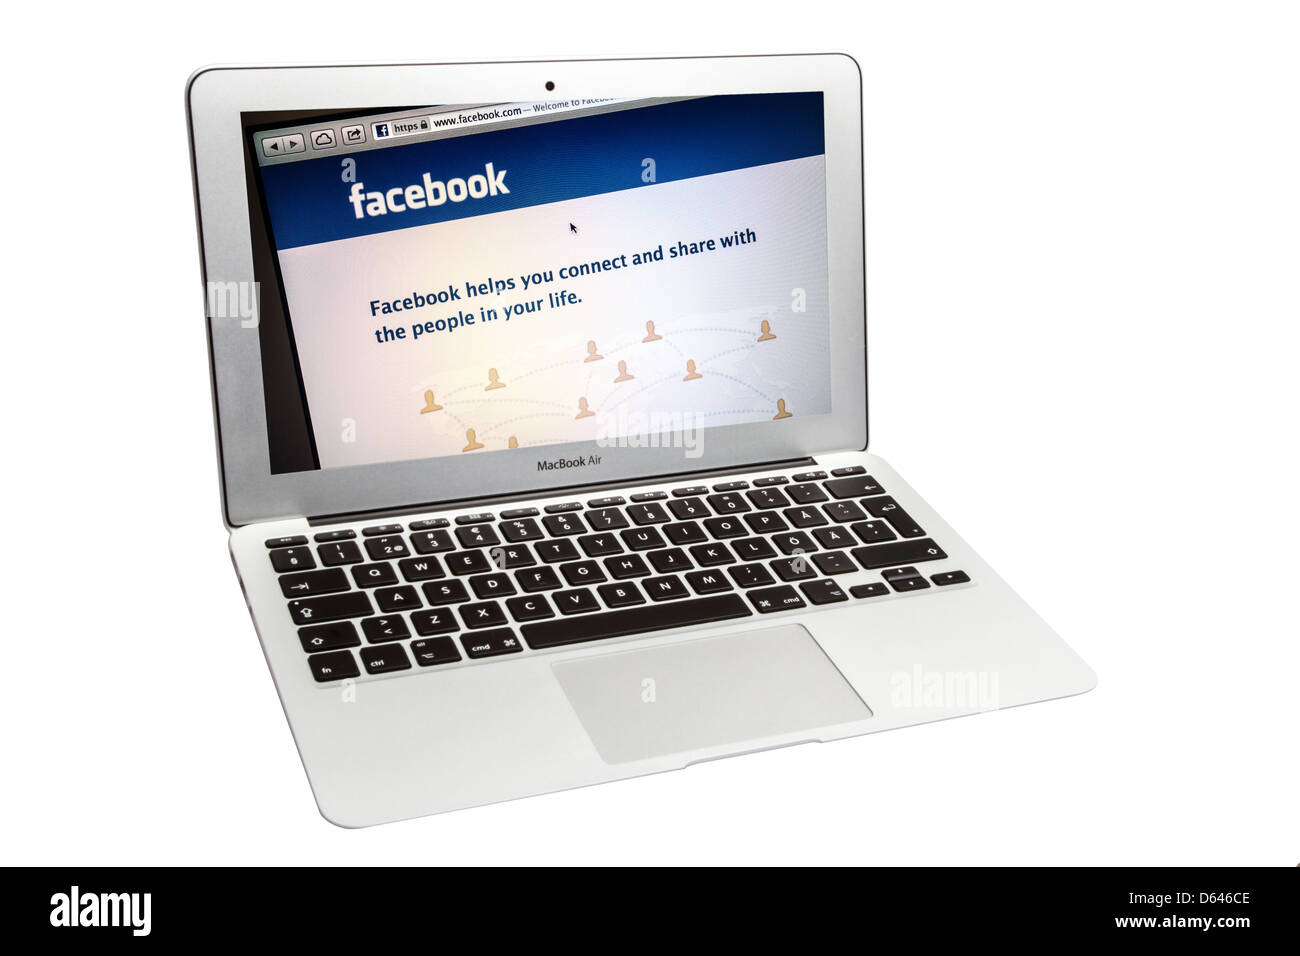 Facebook Sitio web mostrar al aplicar el Libro de Mac Air pantalla de ordenador Foto de stock